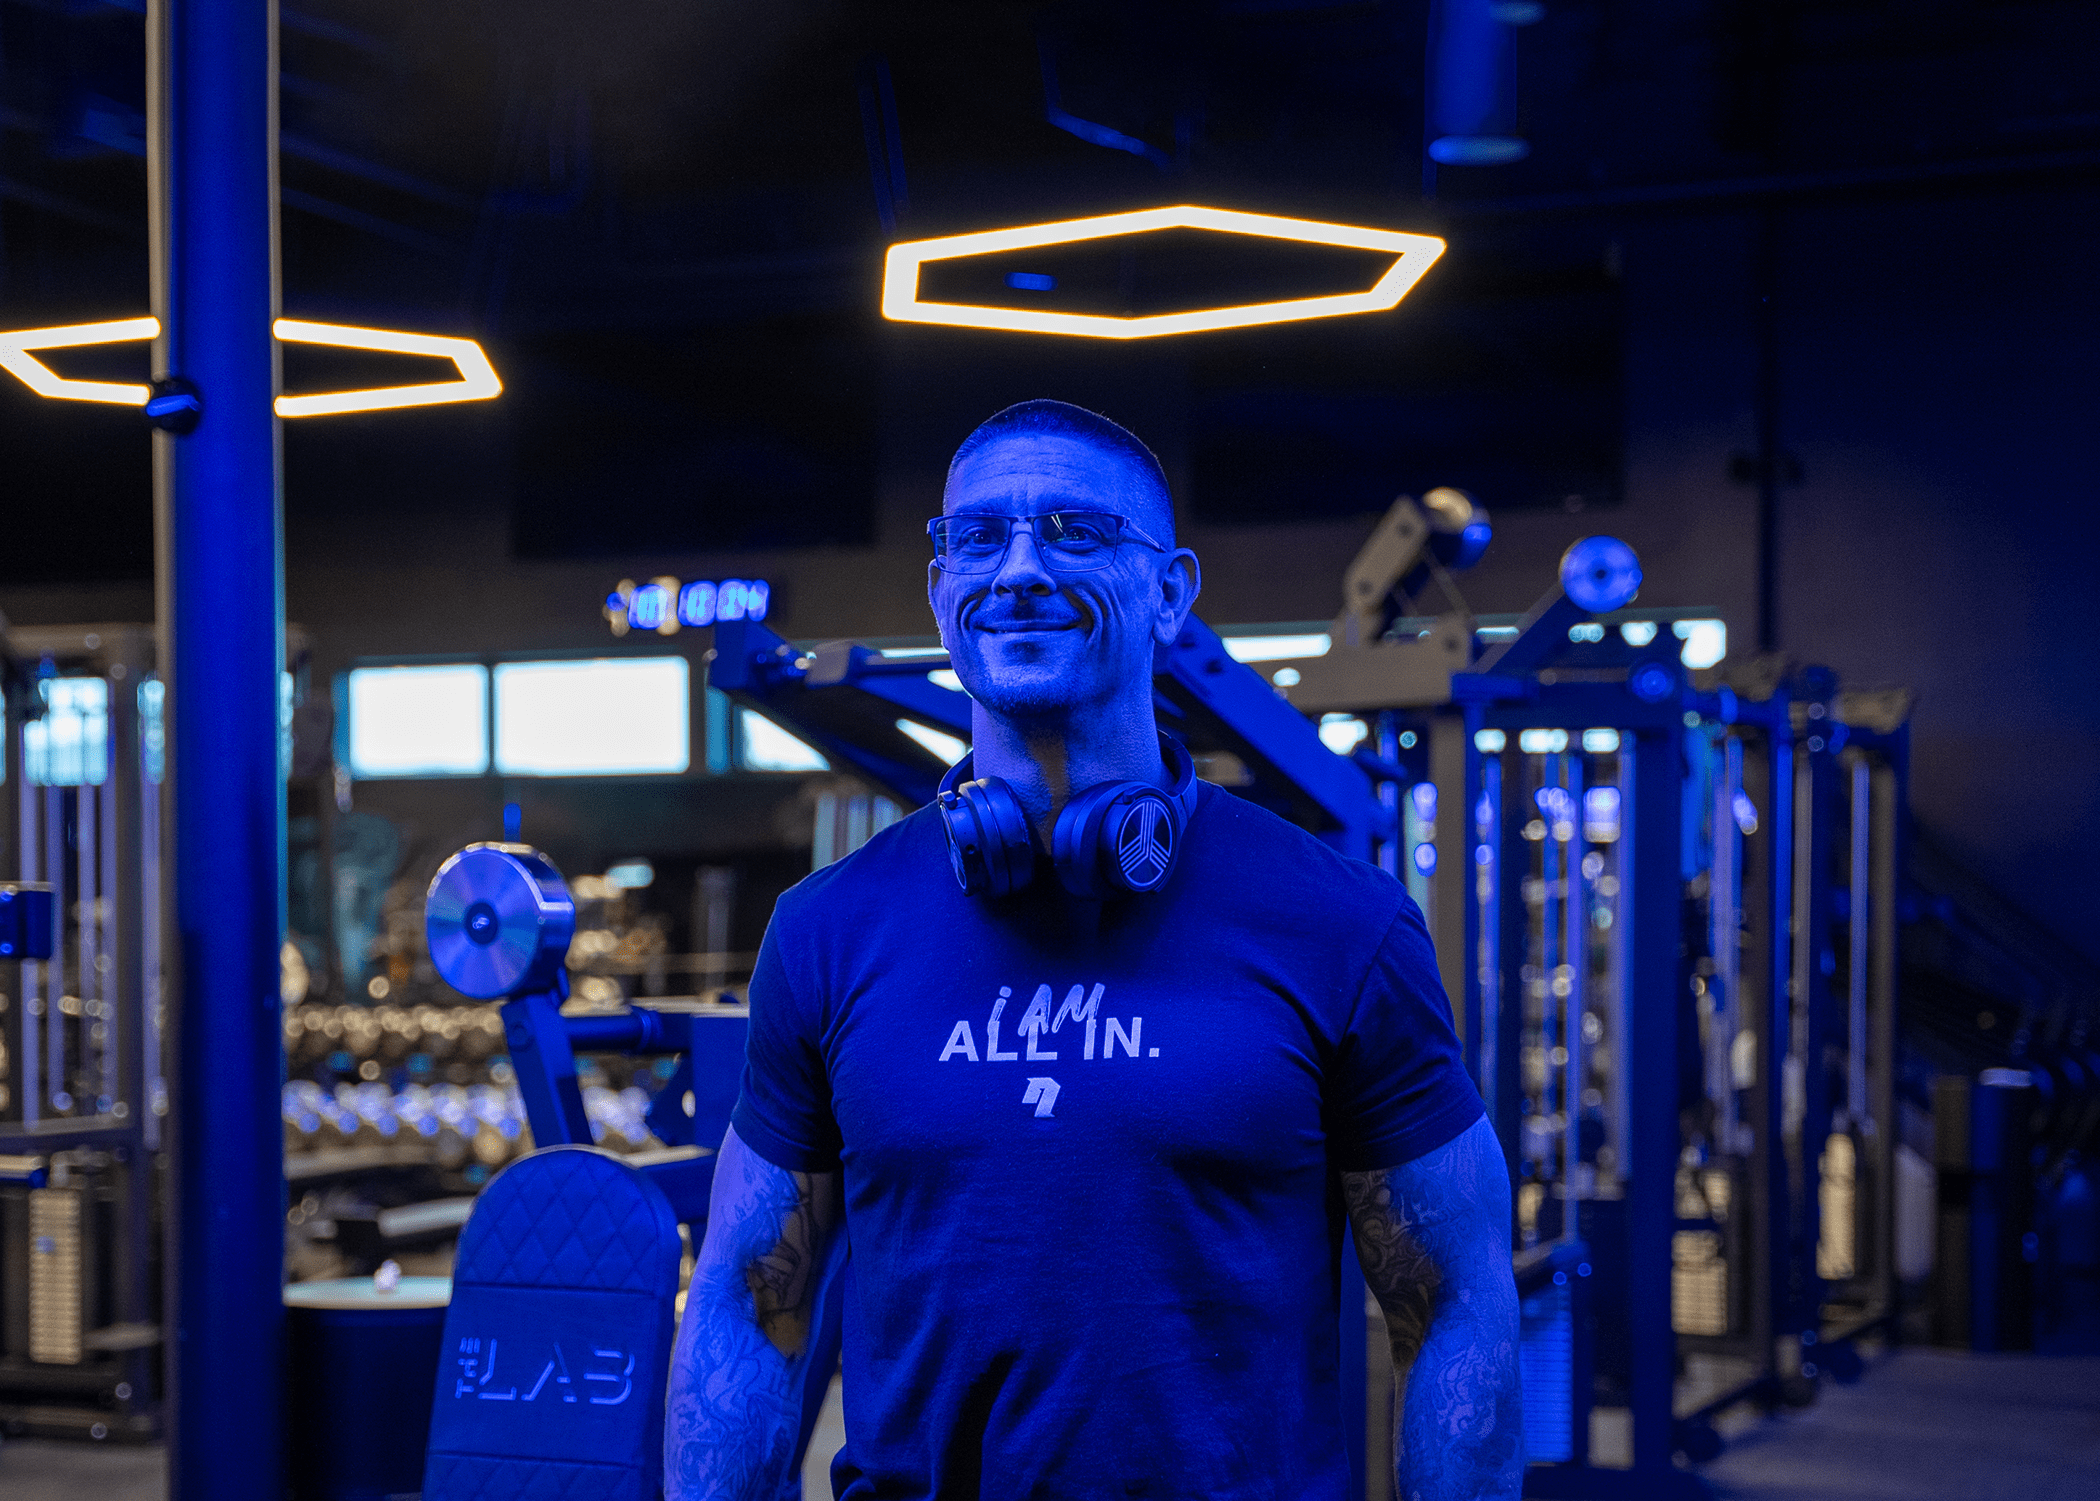 Coach Paul standing under a blue light